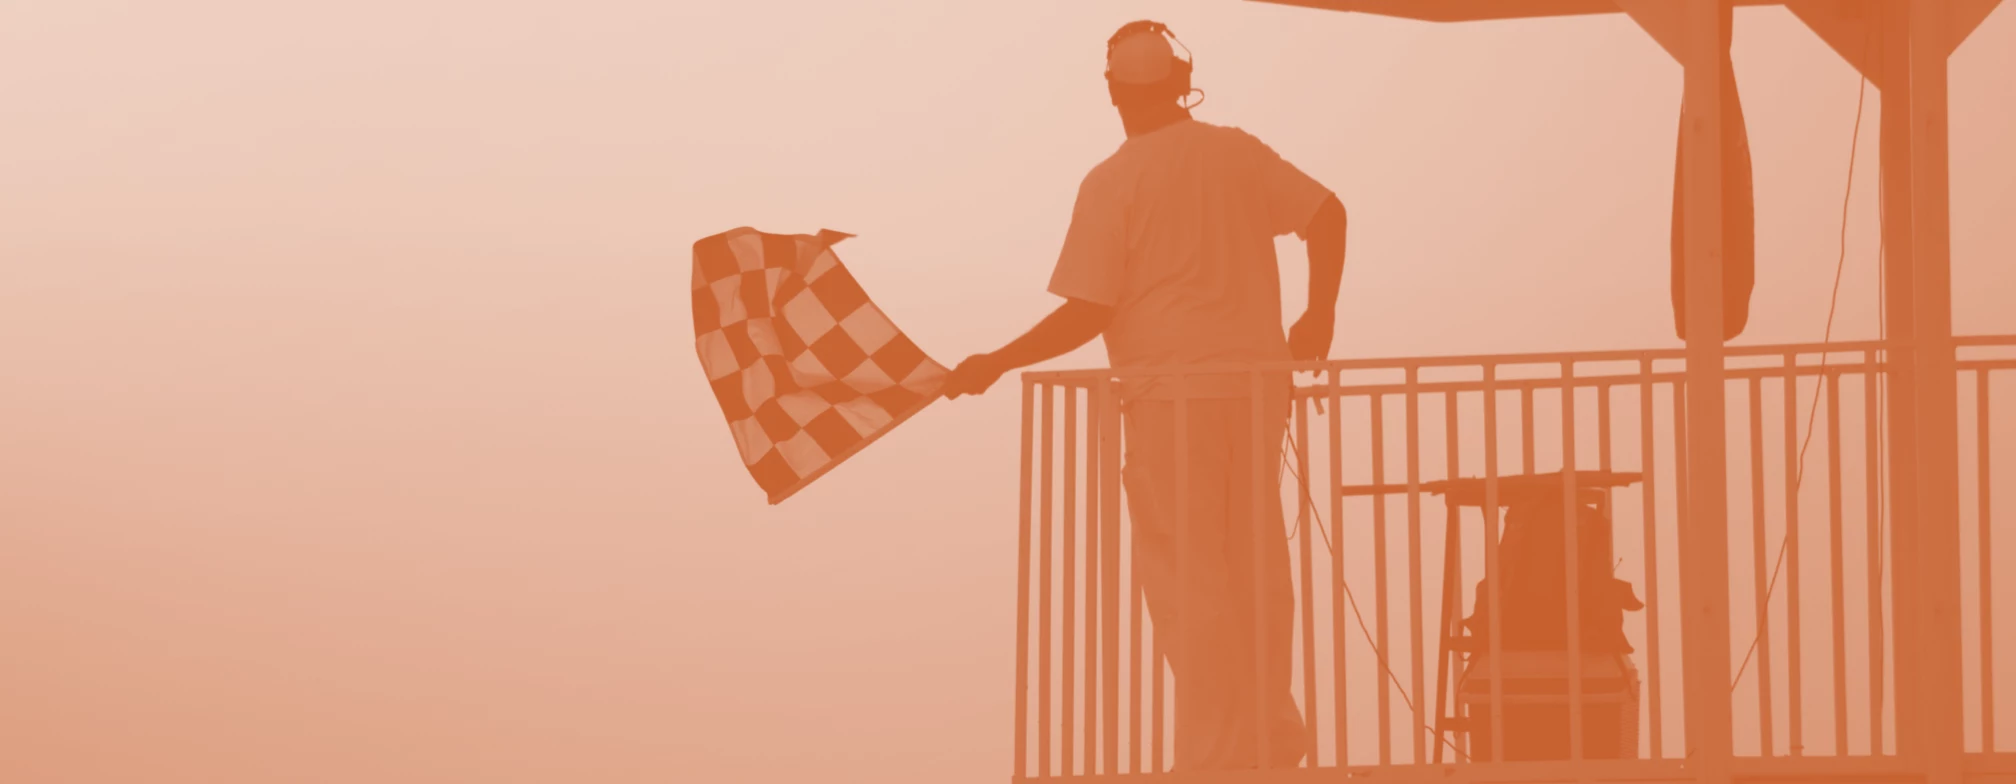 Fotografia de um operador de corrida sinalizando com uma bandeira quadriculada